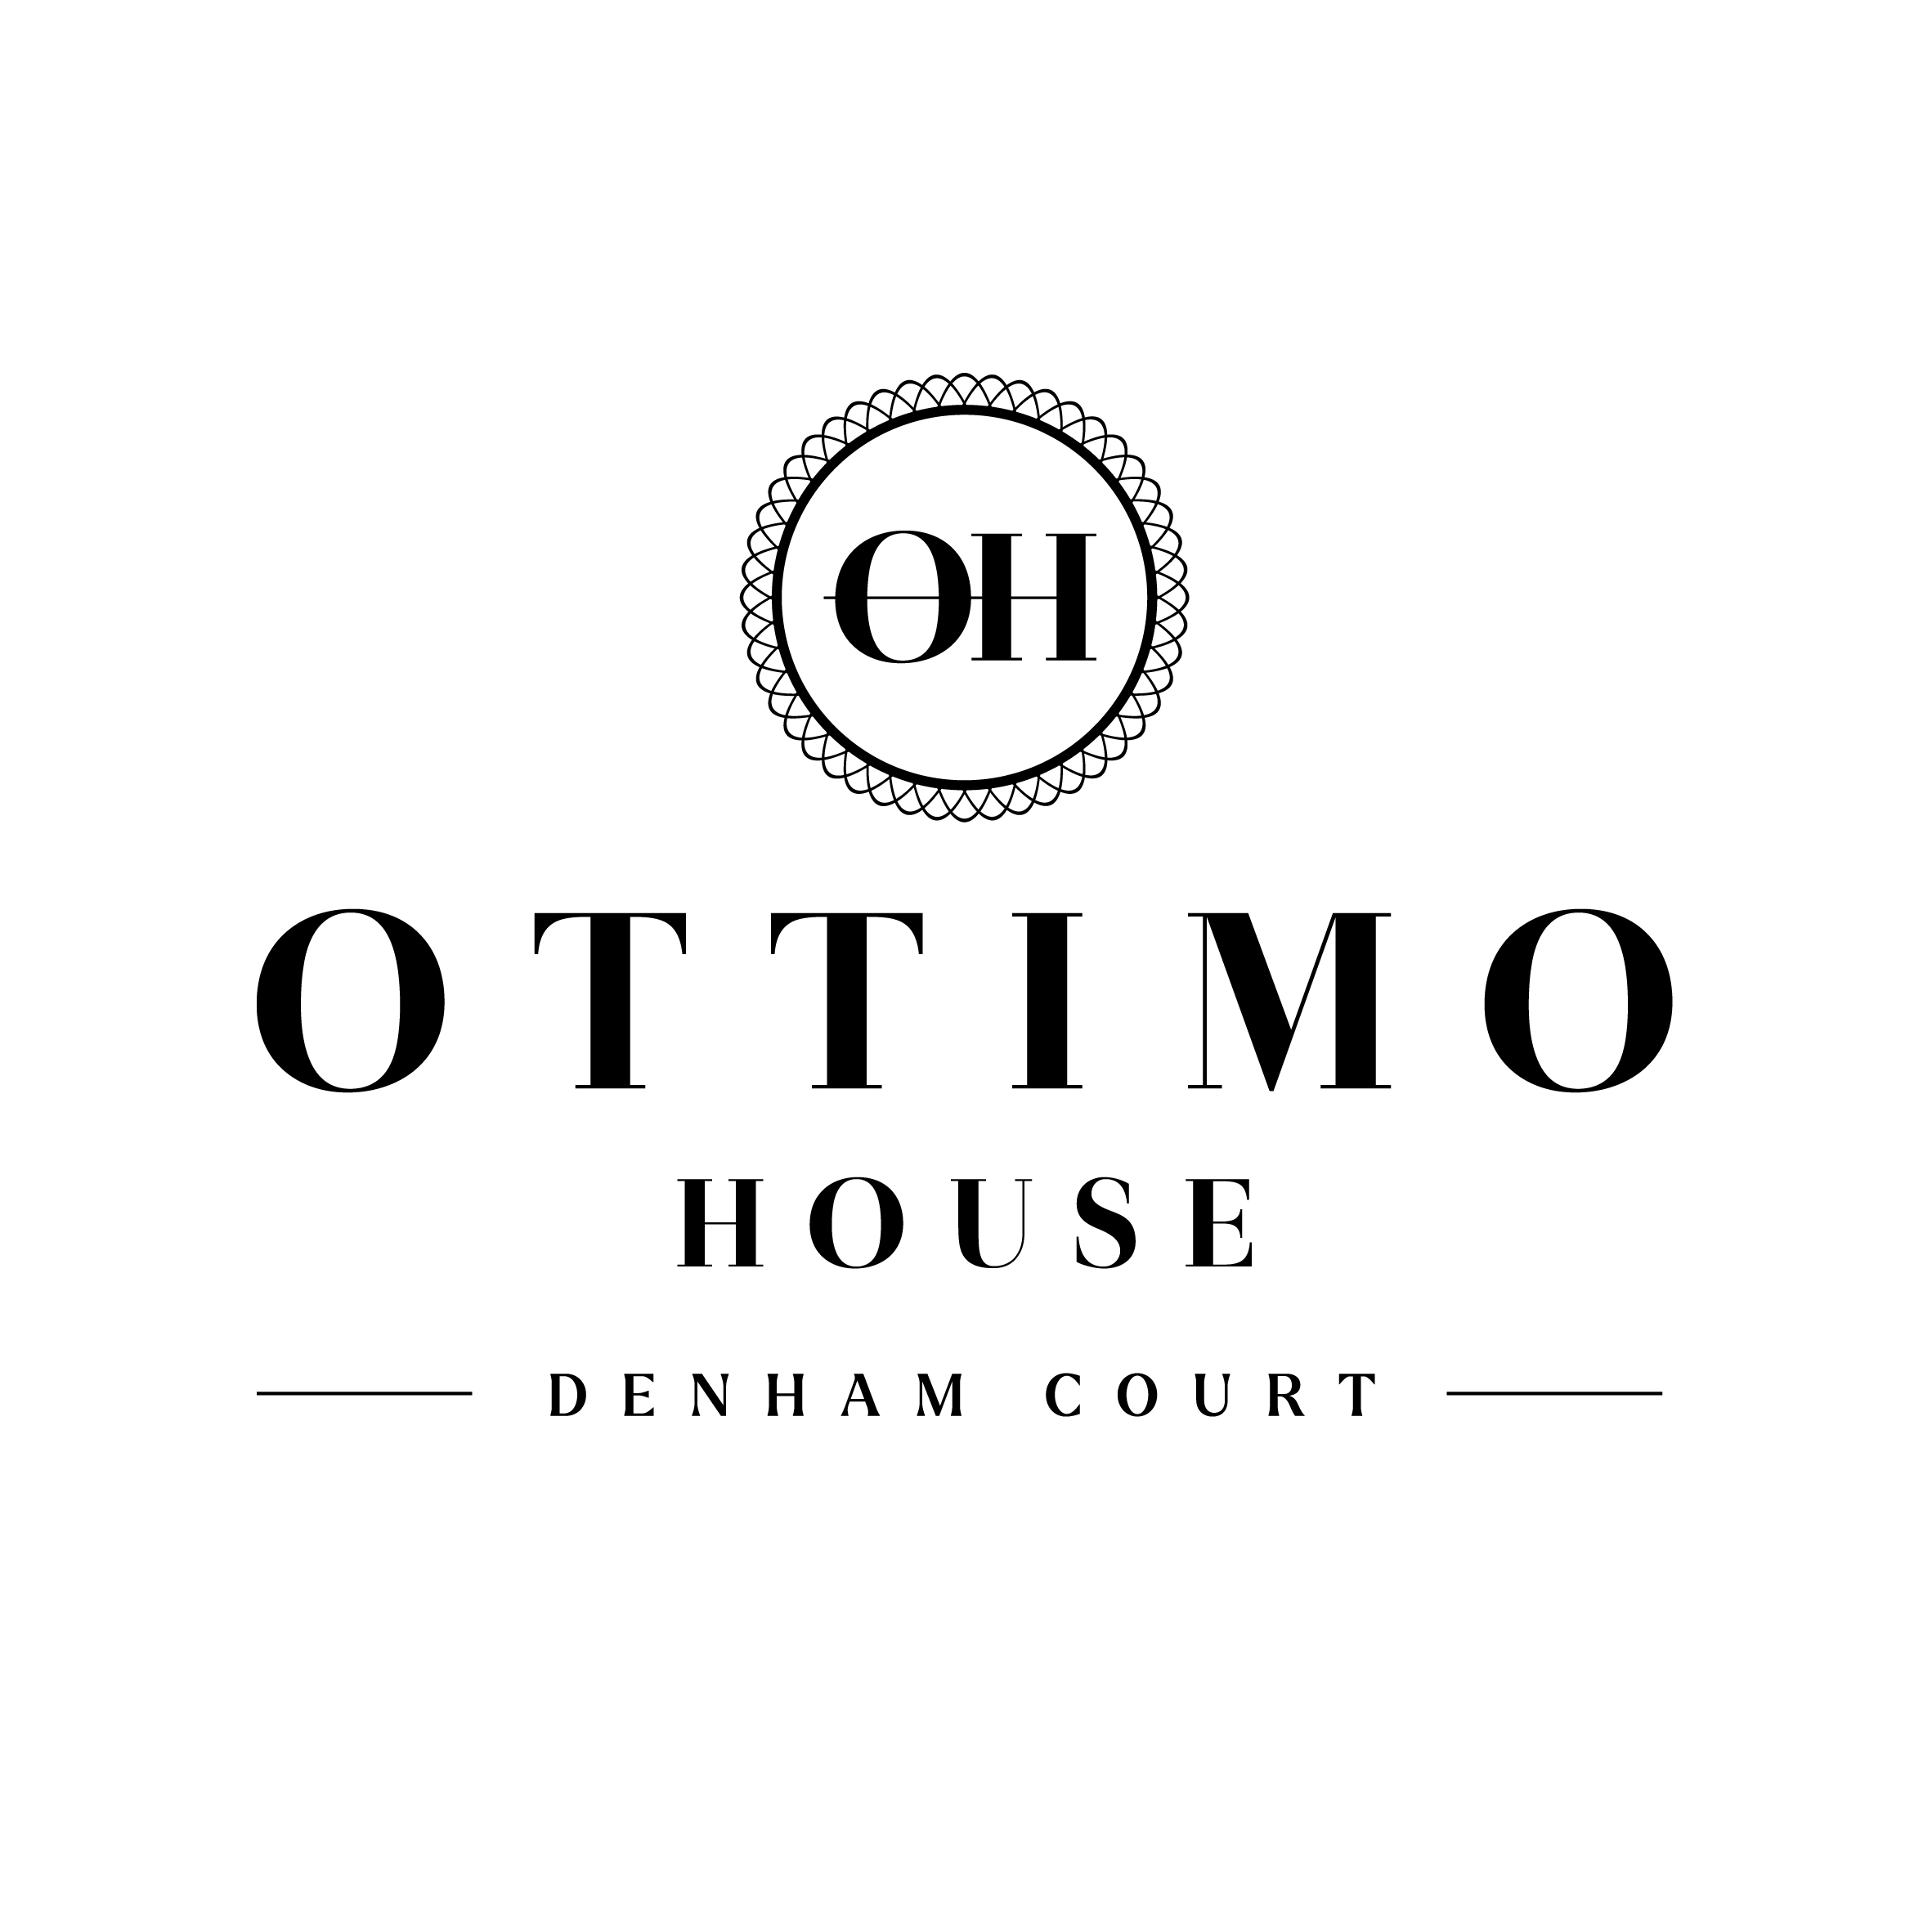 ottimo-house-logo-update-denham-court_100_-black_feb21